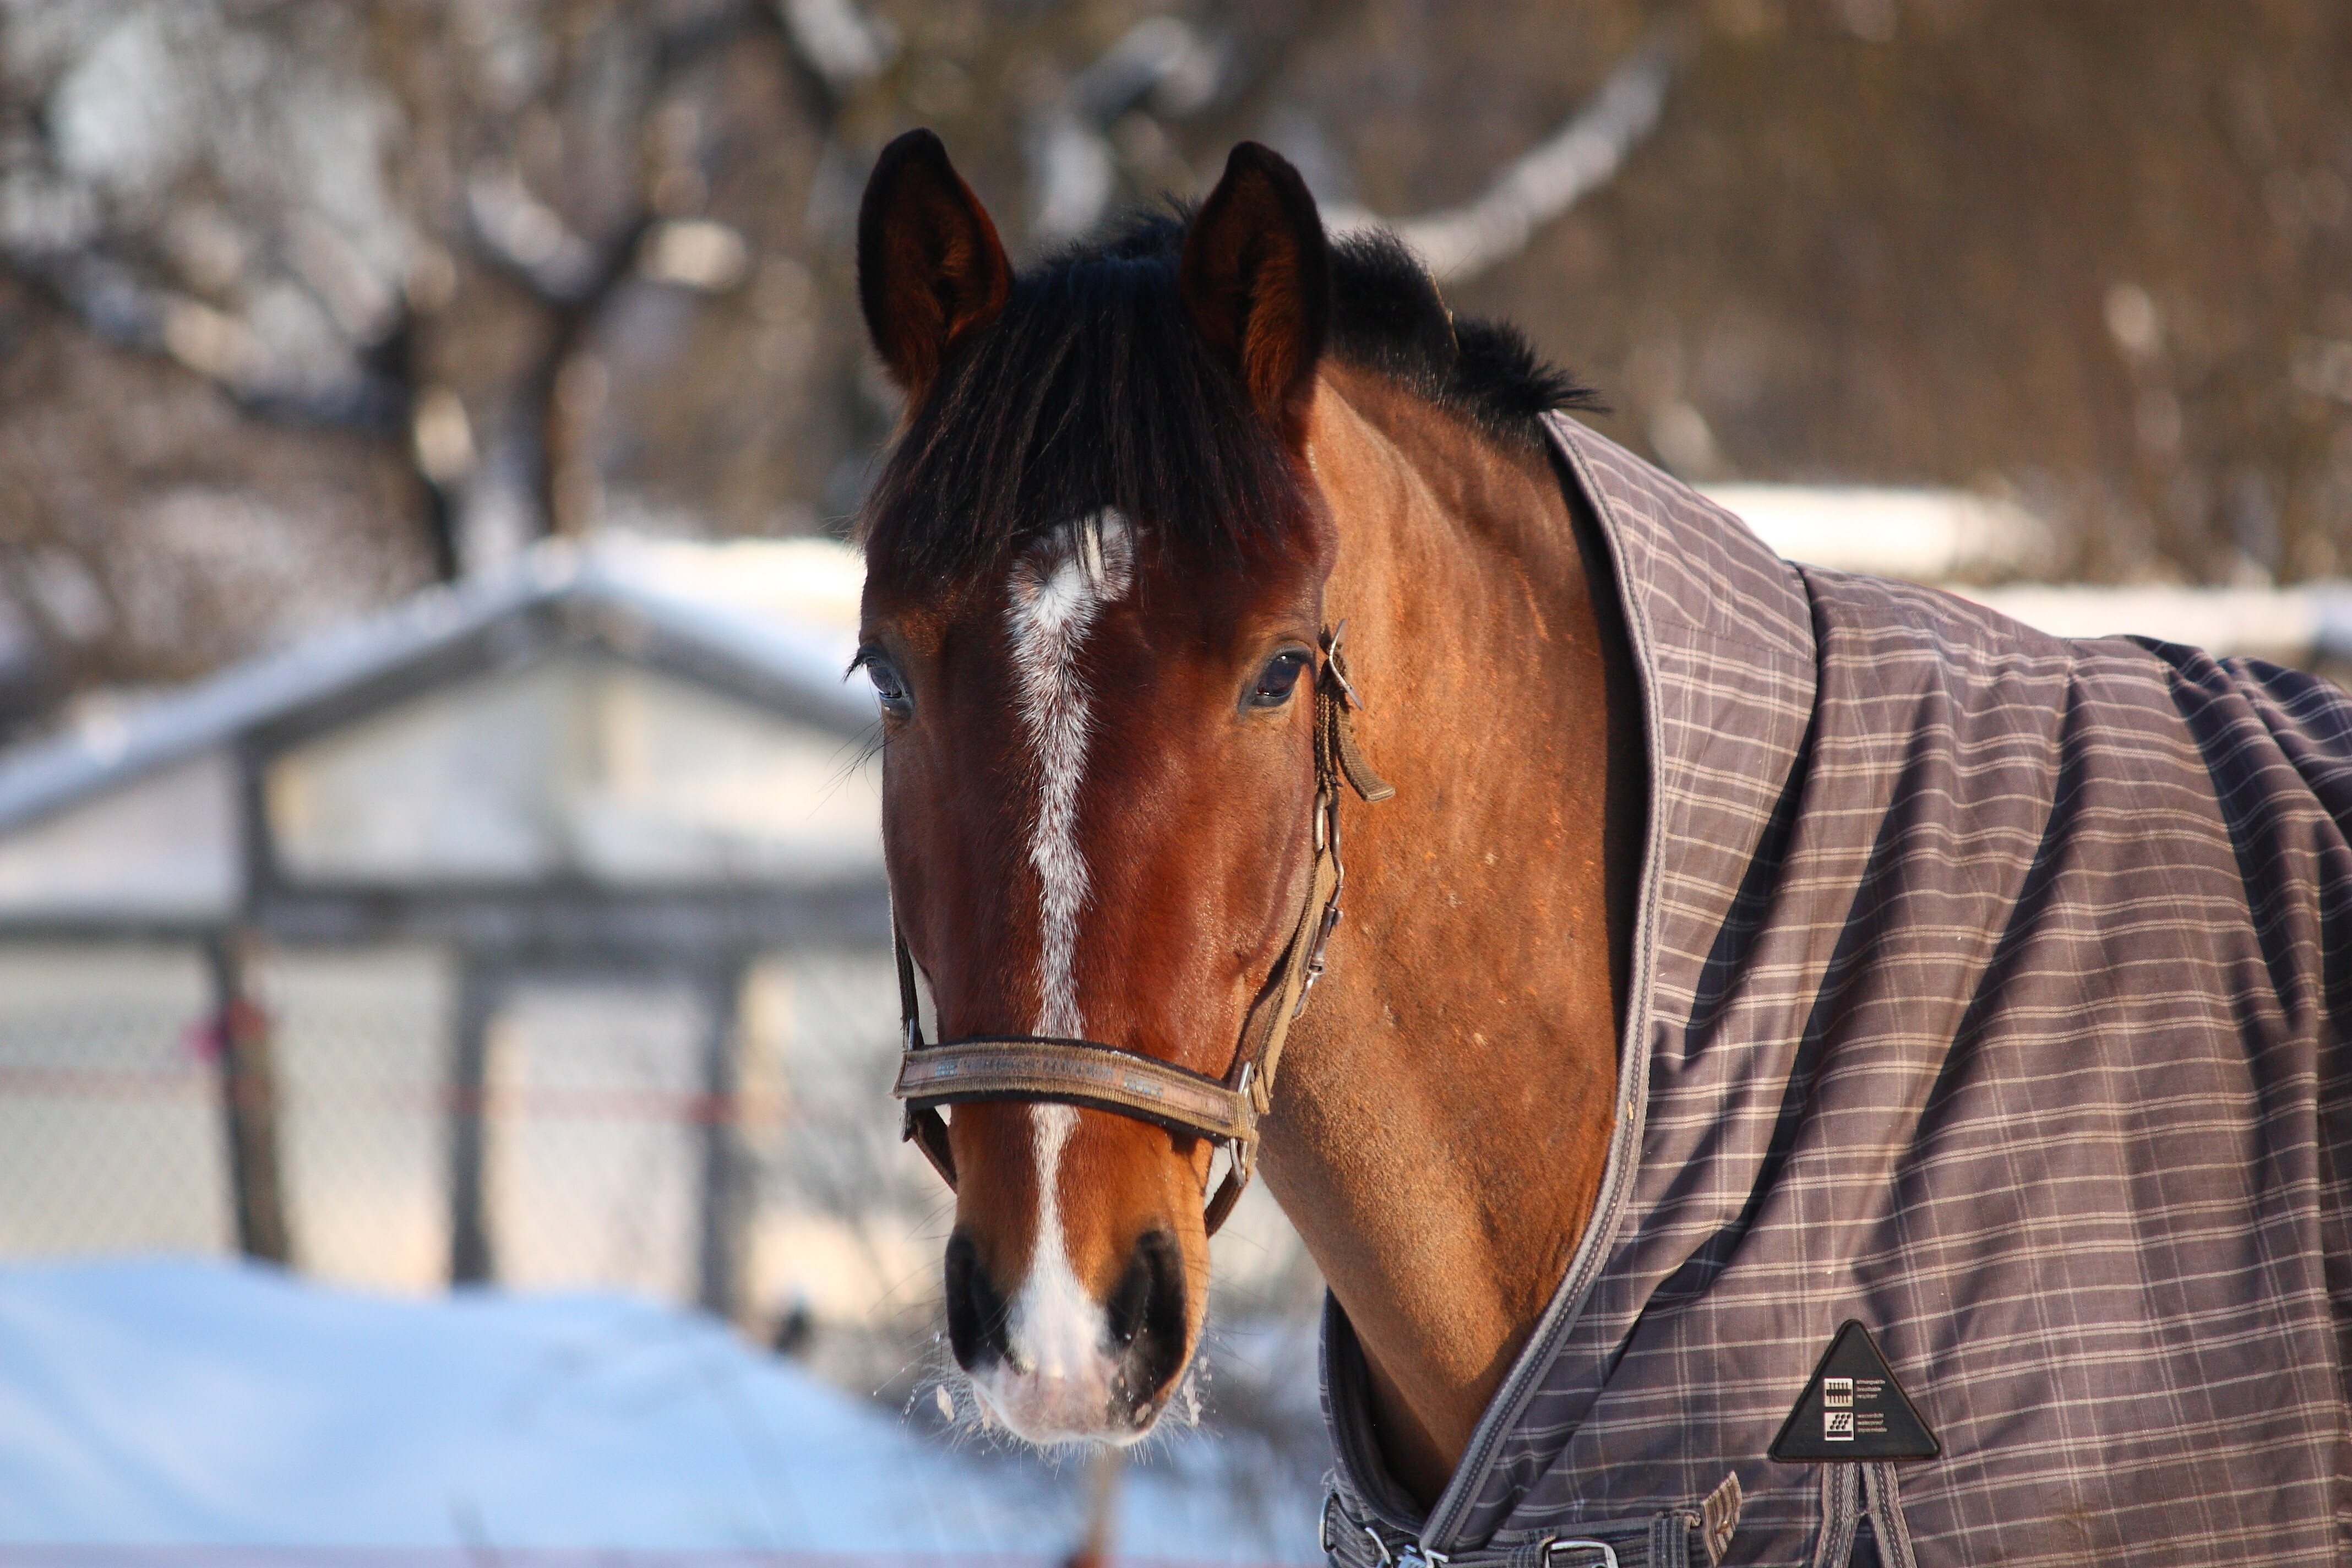 Белорусский волонтер из глубинки спасает лошадей от бойни